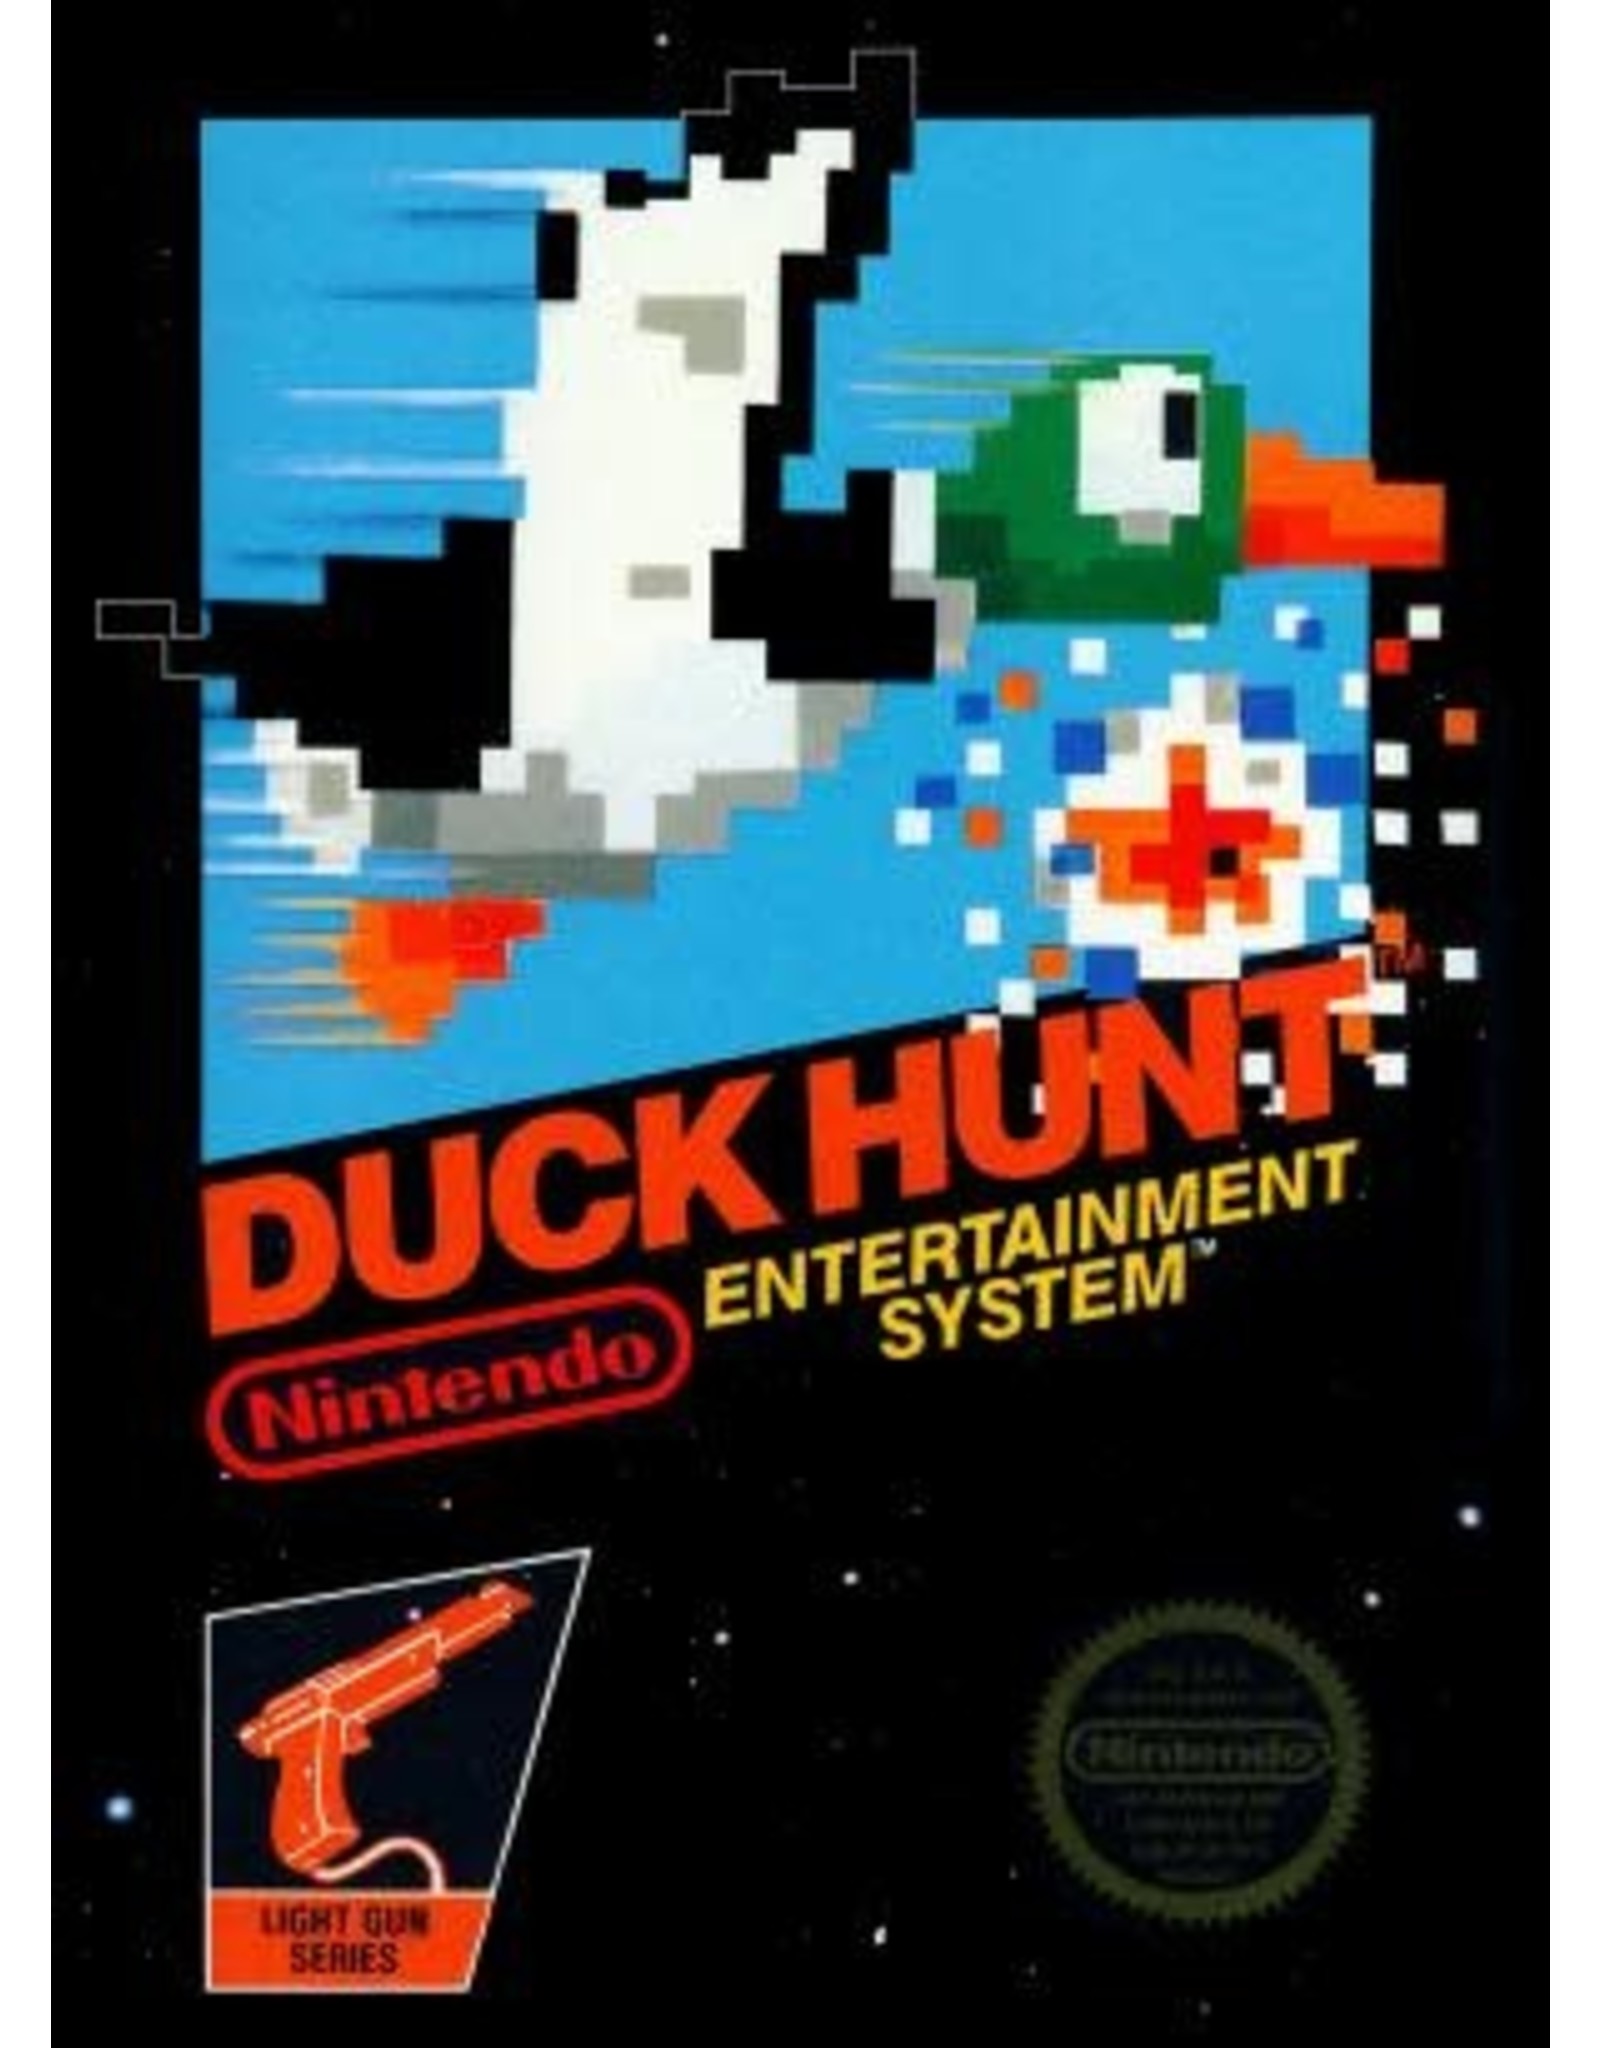 NES Duck Hunt (5 Screw, Cart Only)